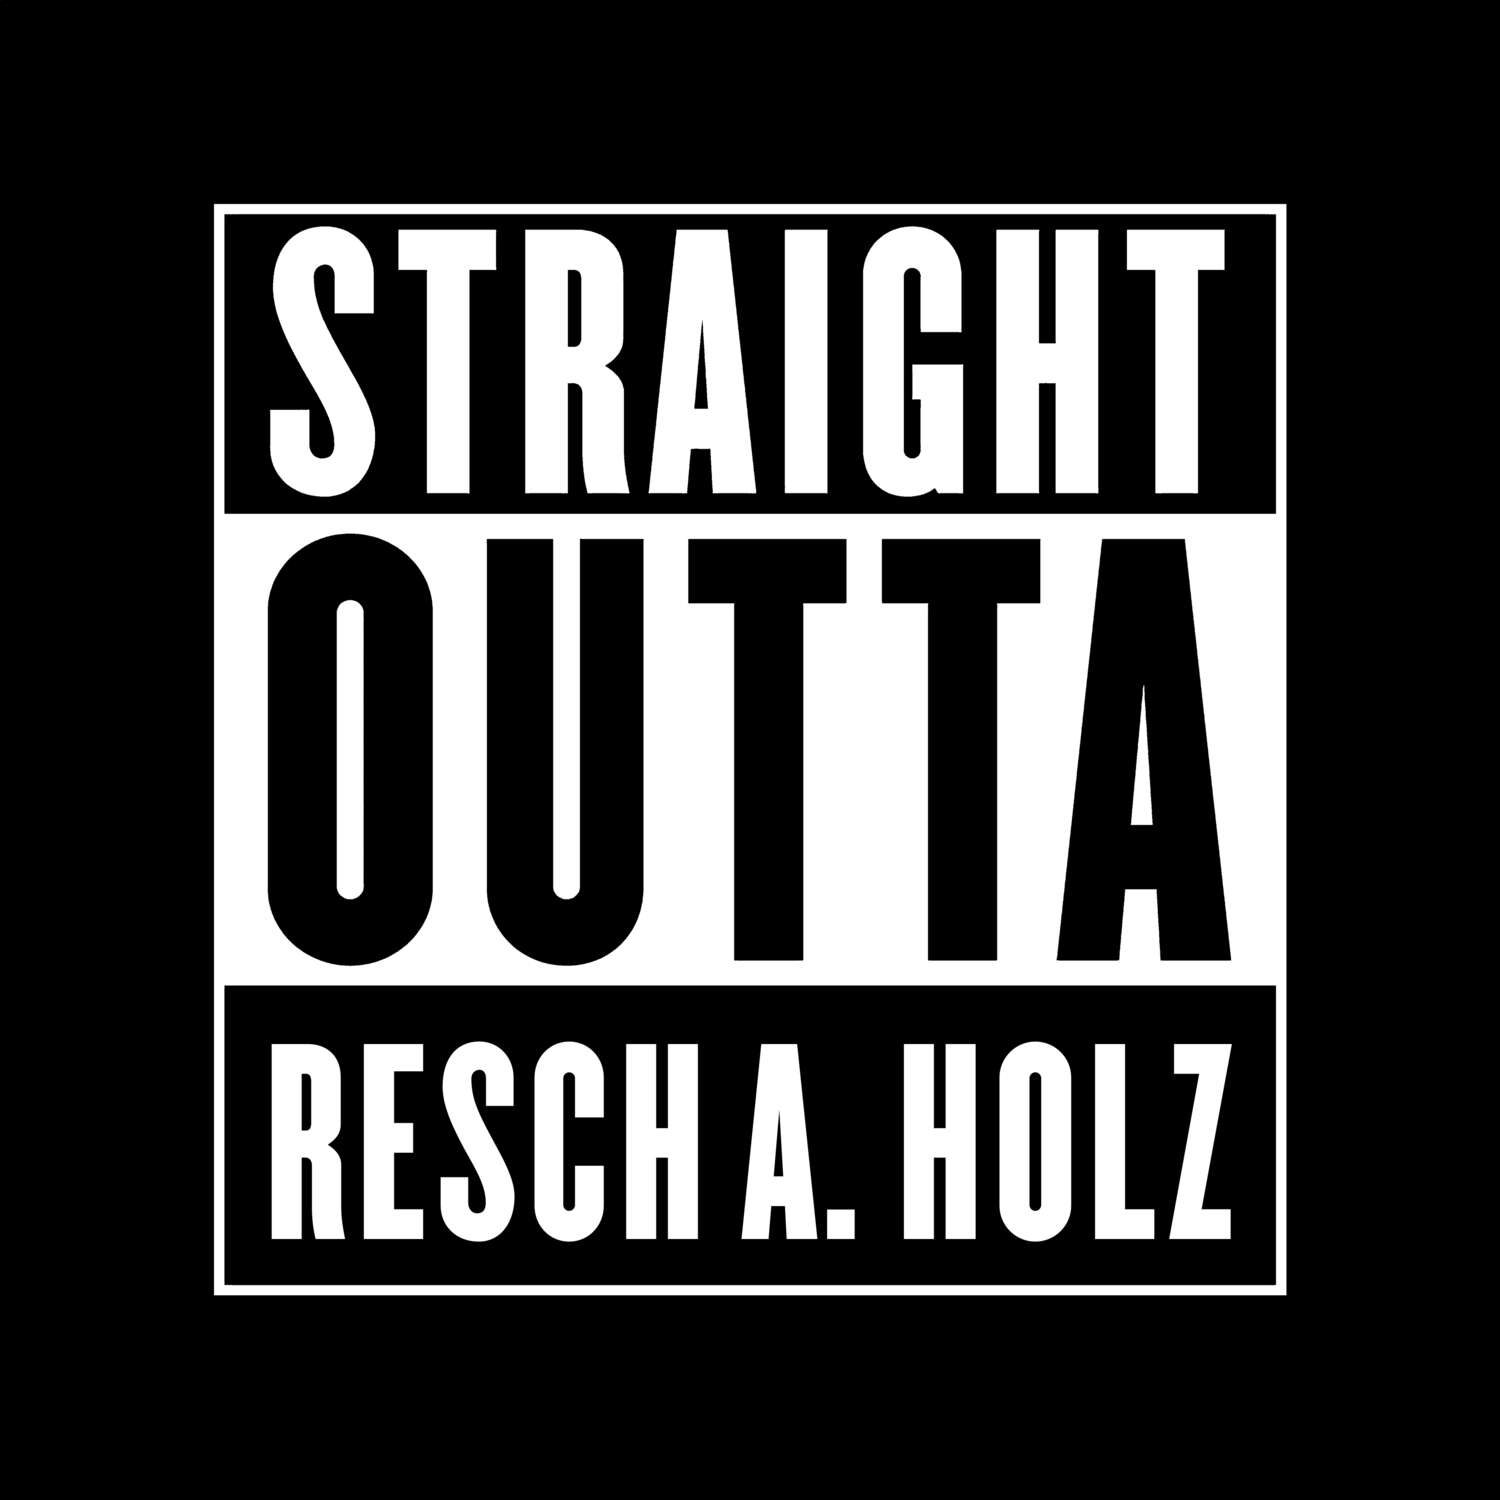 Resch a. Holz T-Shirt »Straight Outta«